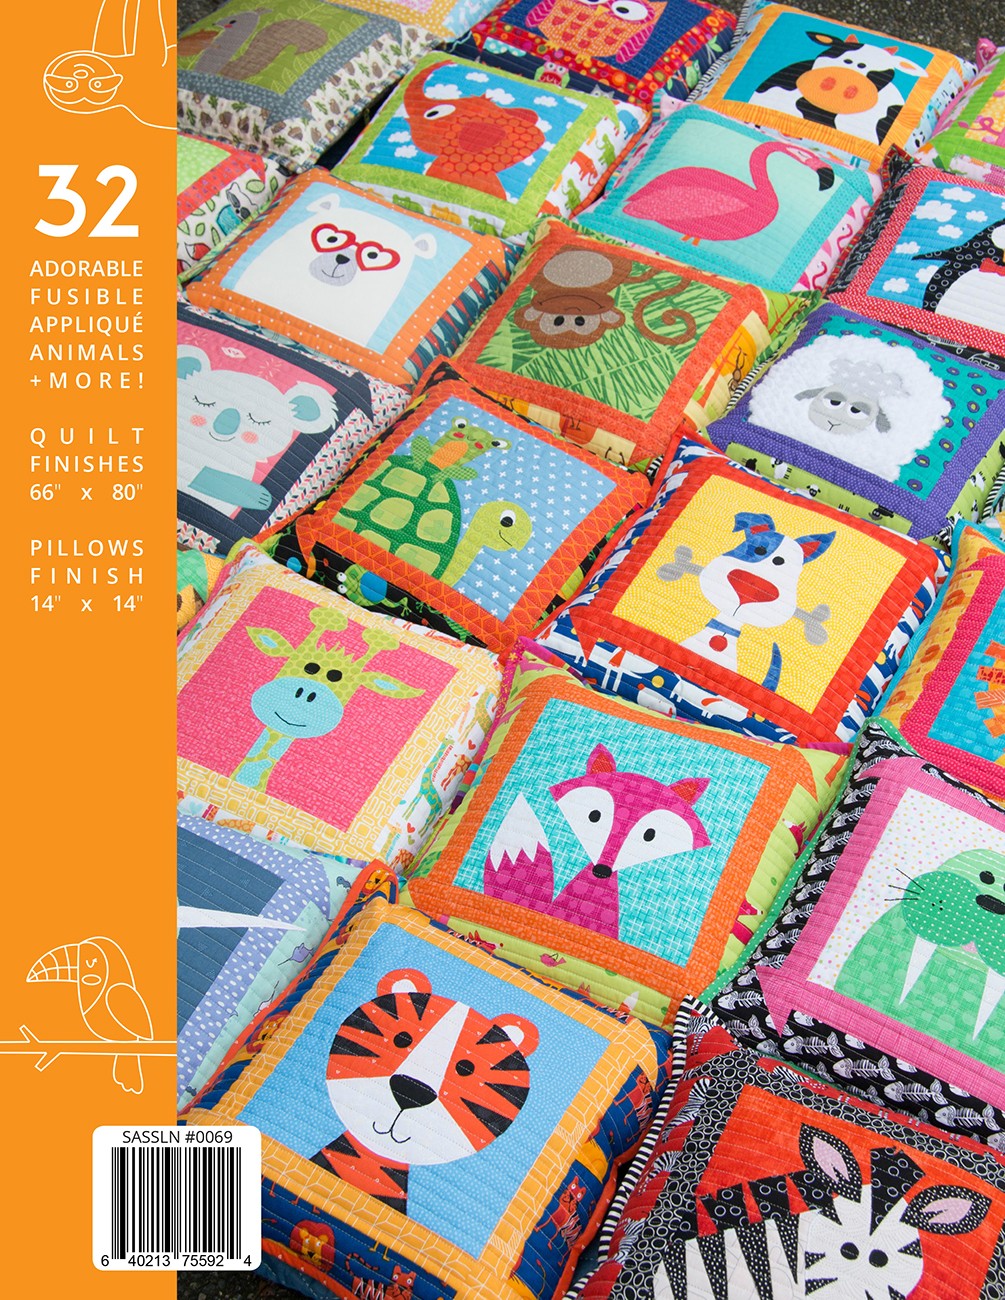 Zootropolis Applique Quilt Pattern Book by Sassafras Lane Designs - Dings & Dents